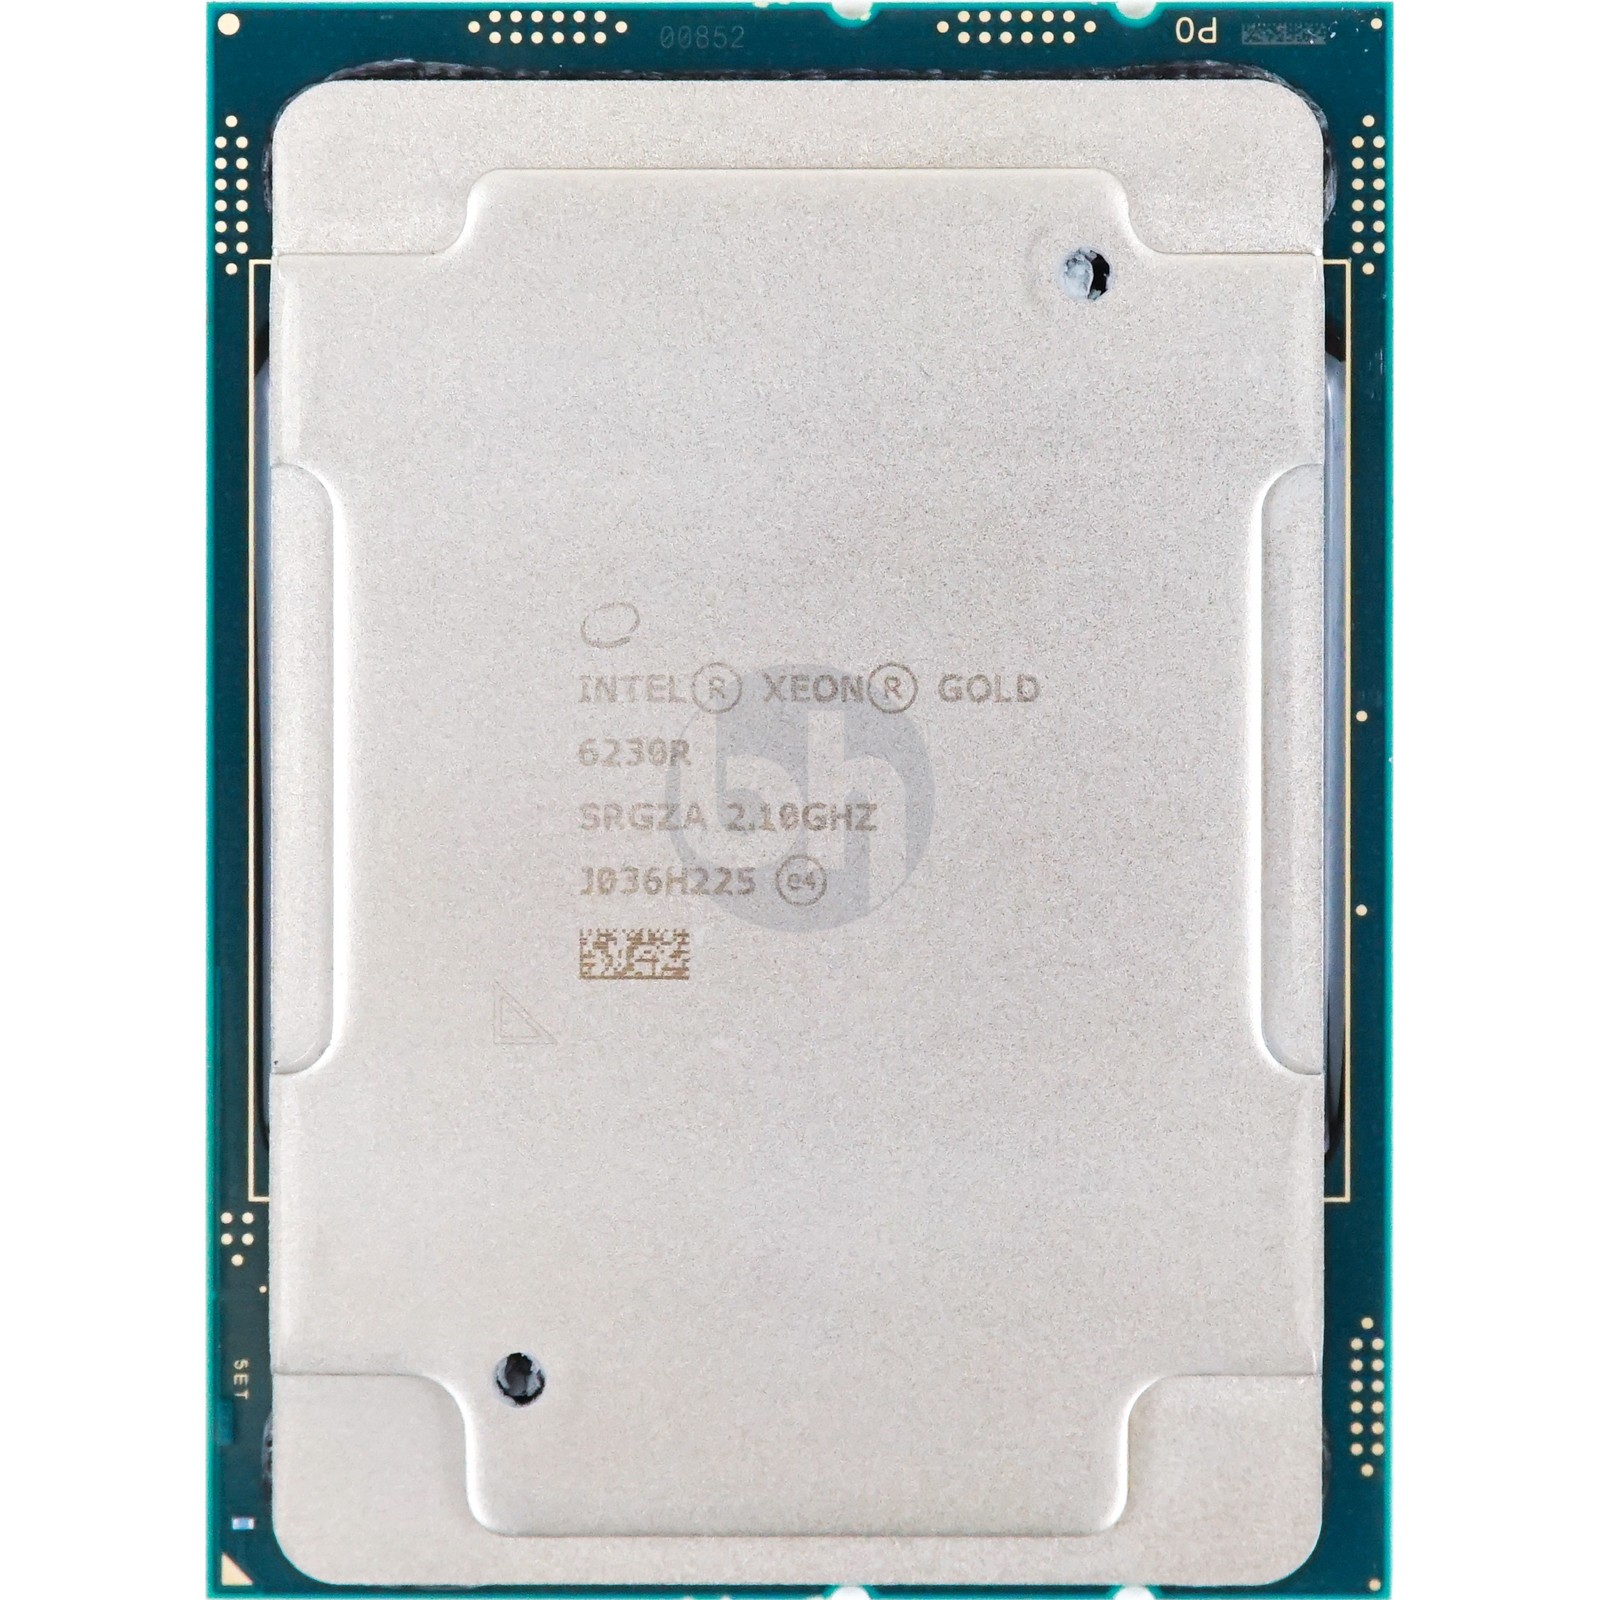 SRGZA Intel Xeon Gold 6230R (SRGZA) 26-Core 2.10Ghz 35.75MB 150W CPU